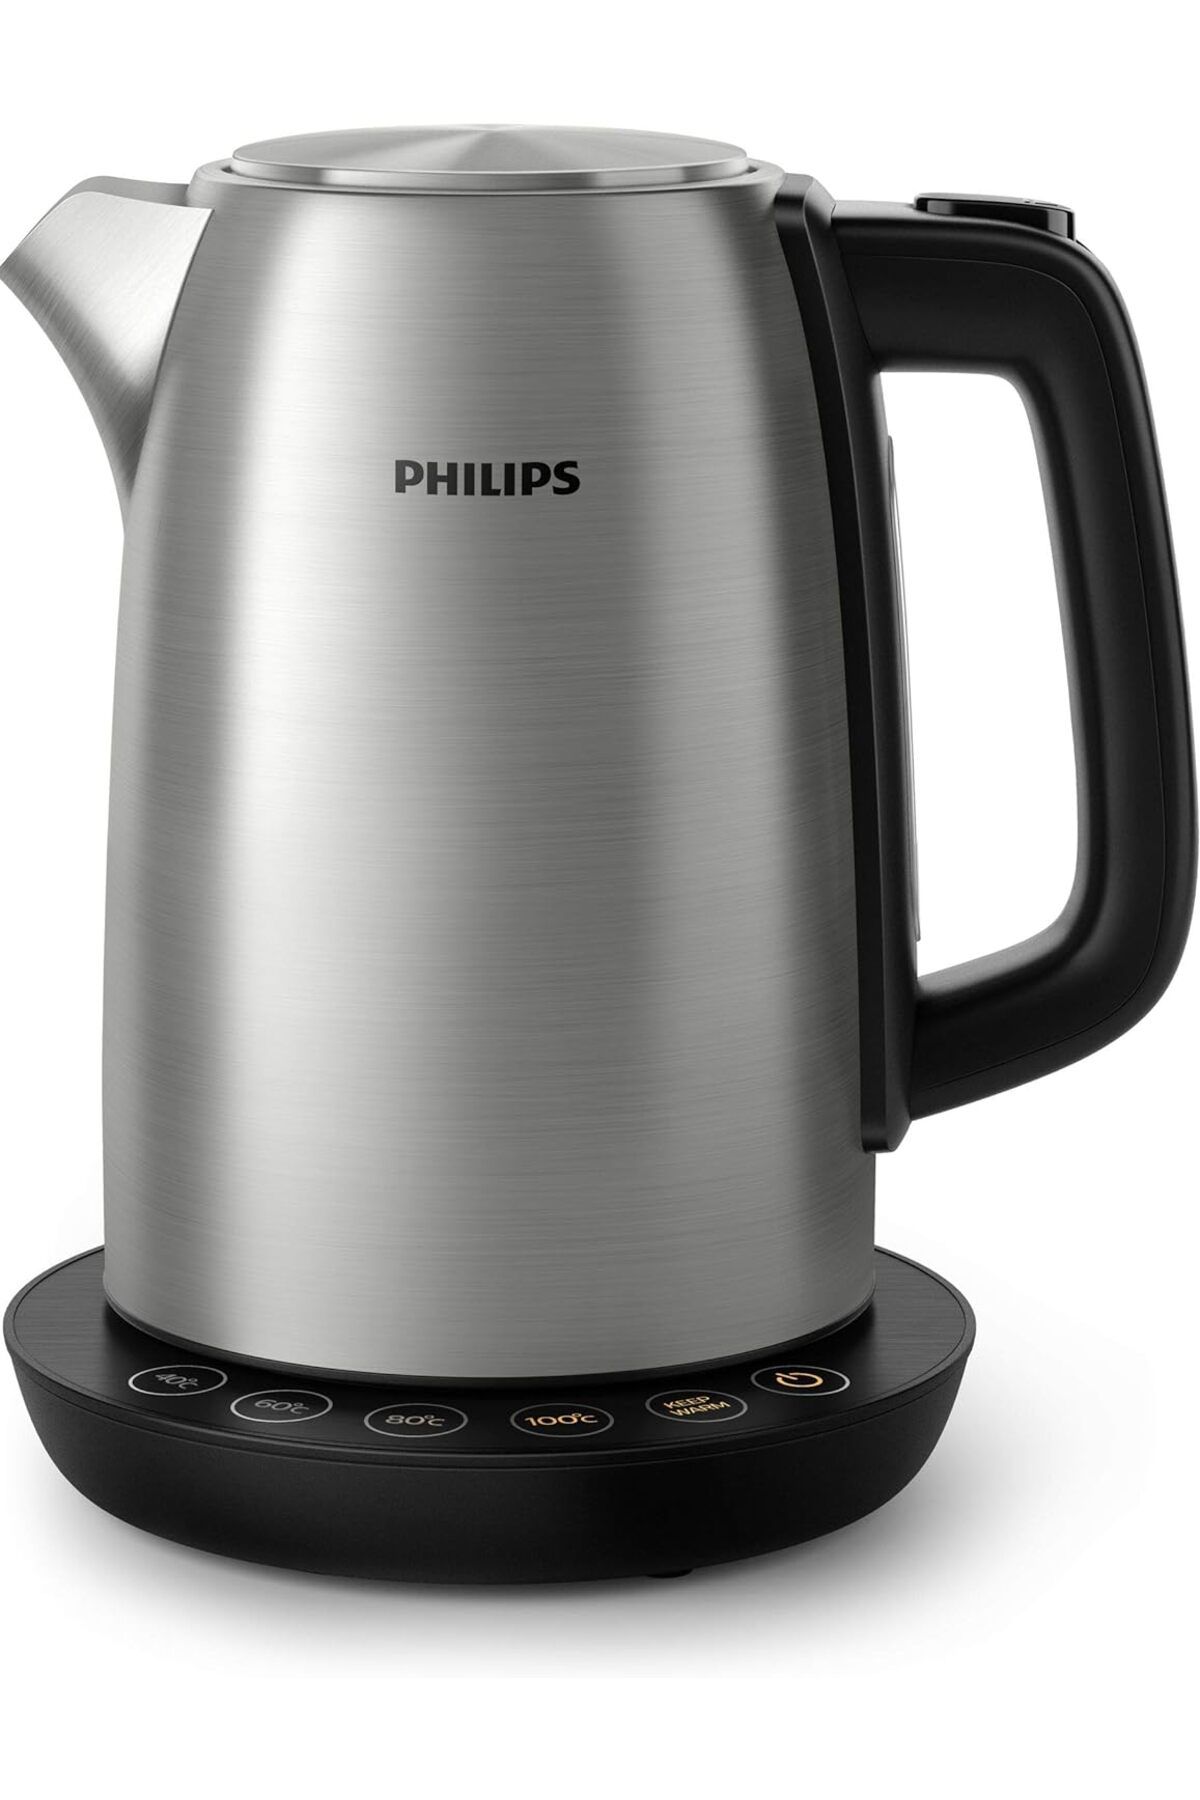 Philips su ısıtıcısı HD9359/90, paslanmaz çelik,2200 Watt, 1,7 litre, sıcak tutma